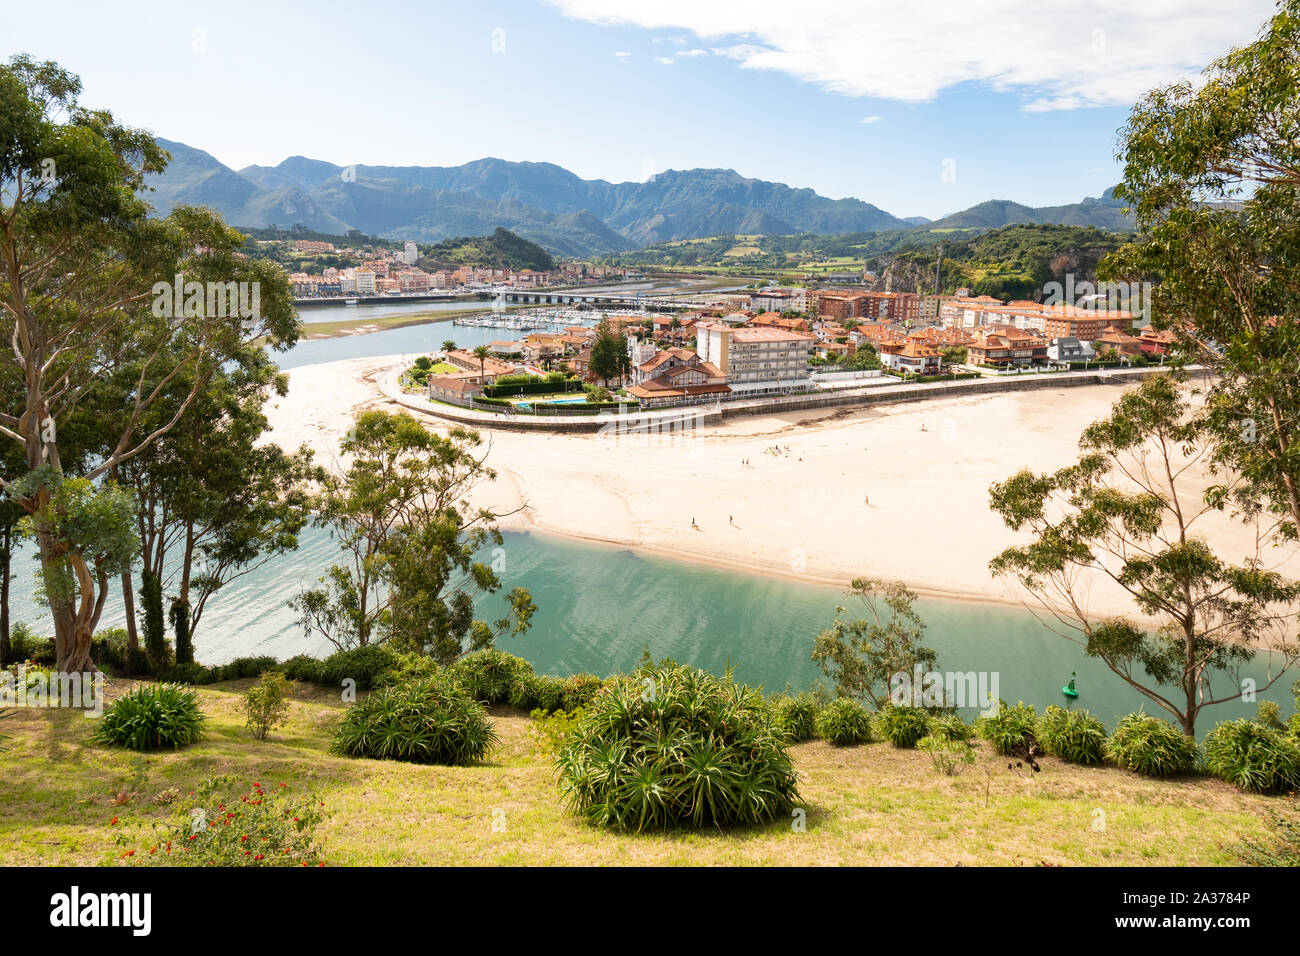 La playa y la ciudad de Ribadesella, en Asturias, en el norte de España, Europa - por el estuario del río Sella Foto de stock